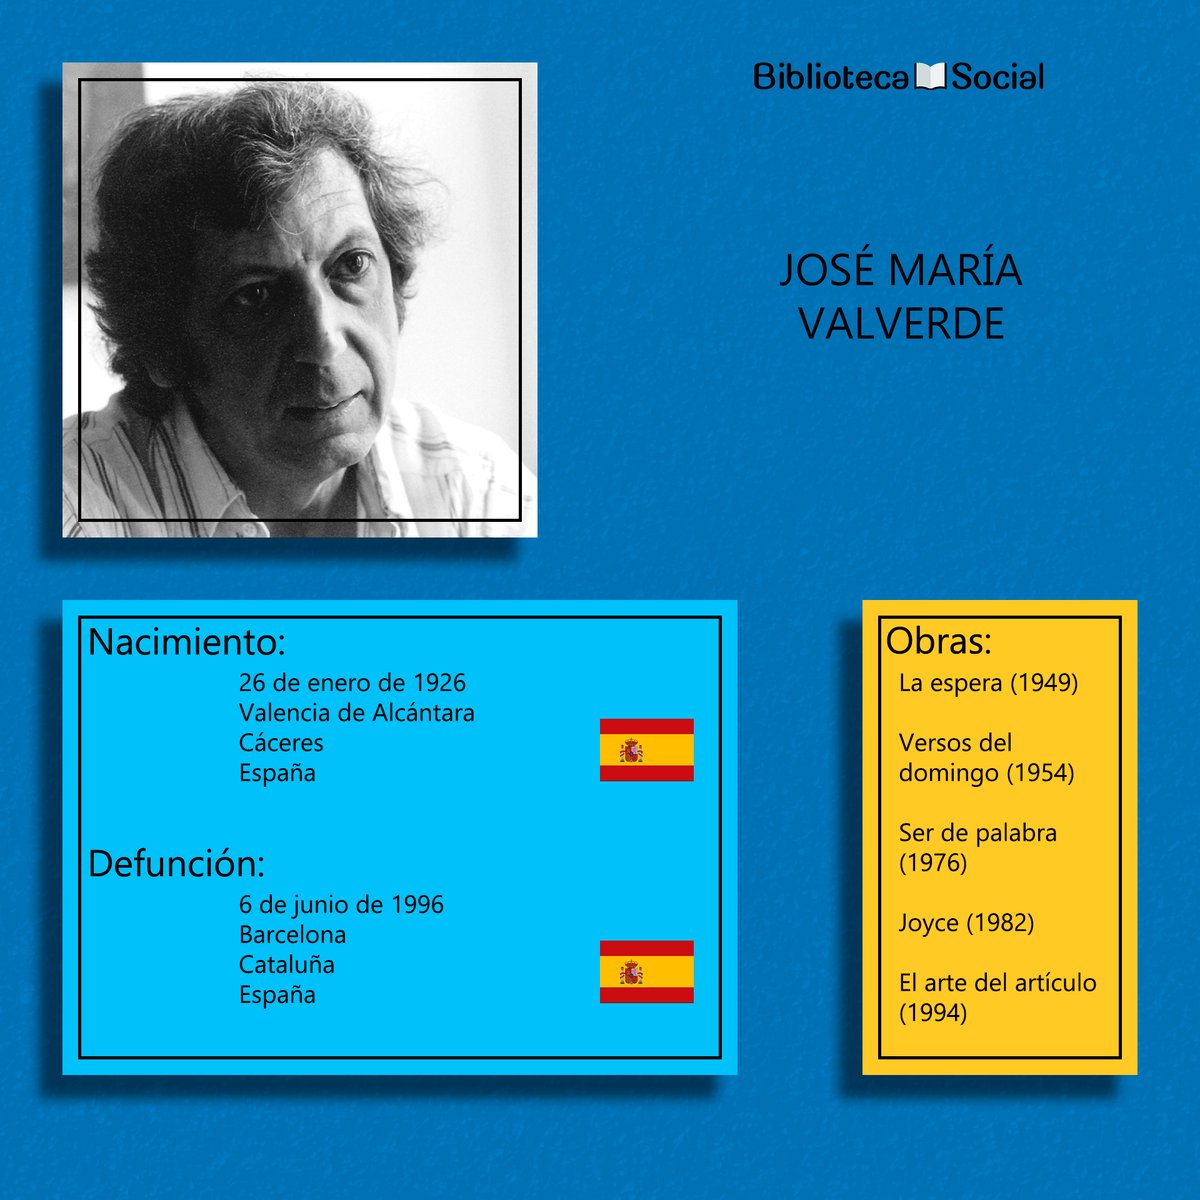 #Efemérides
José María Valverde se inició a temprana edad en la literatura, con diecinueve años publica su poemario Hombre de Dios. En 1952 publicó su primer libro de crítica literaria: Estudios sobre la palabra poética.
#JoséMaríaValverde
#BibliotecaSocial #BS